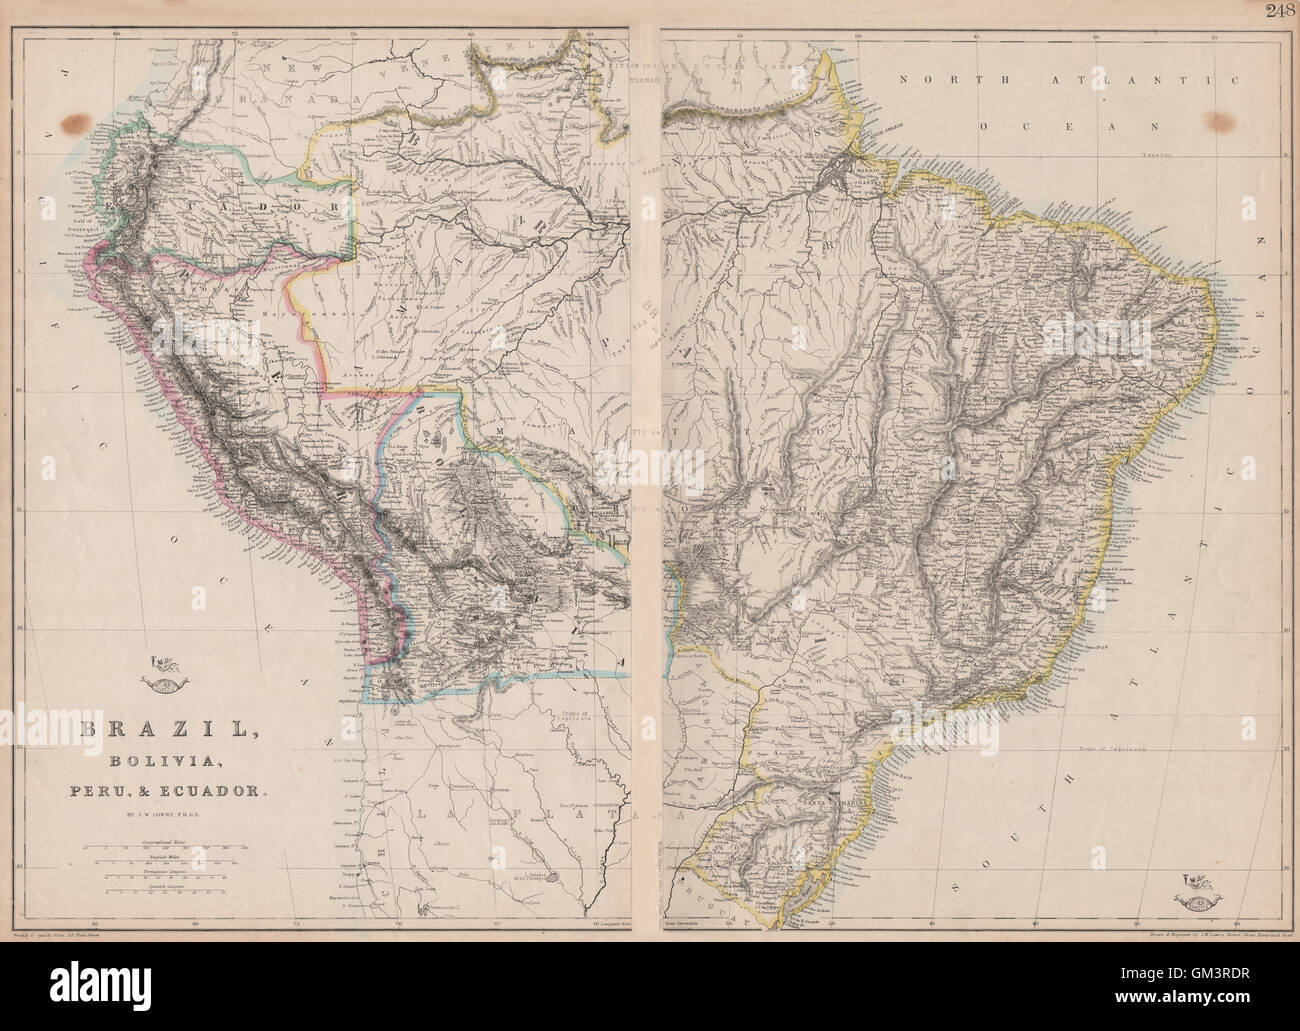 S AMERICA 'Brazil, Bolivia, Peru, & Ecuador' Bolivia w/ littoral.LOWRY, 1863 map Stock Photo